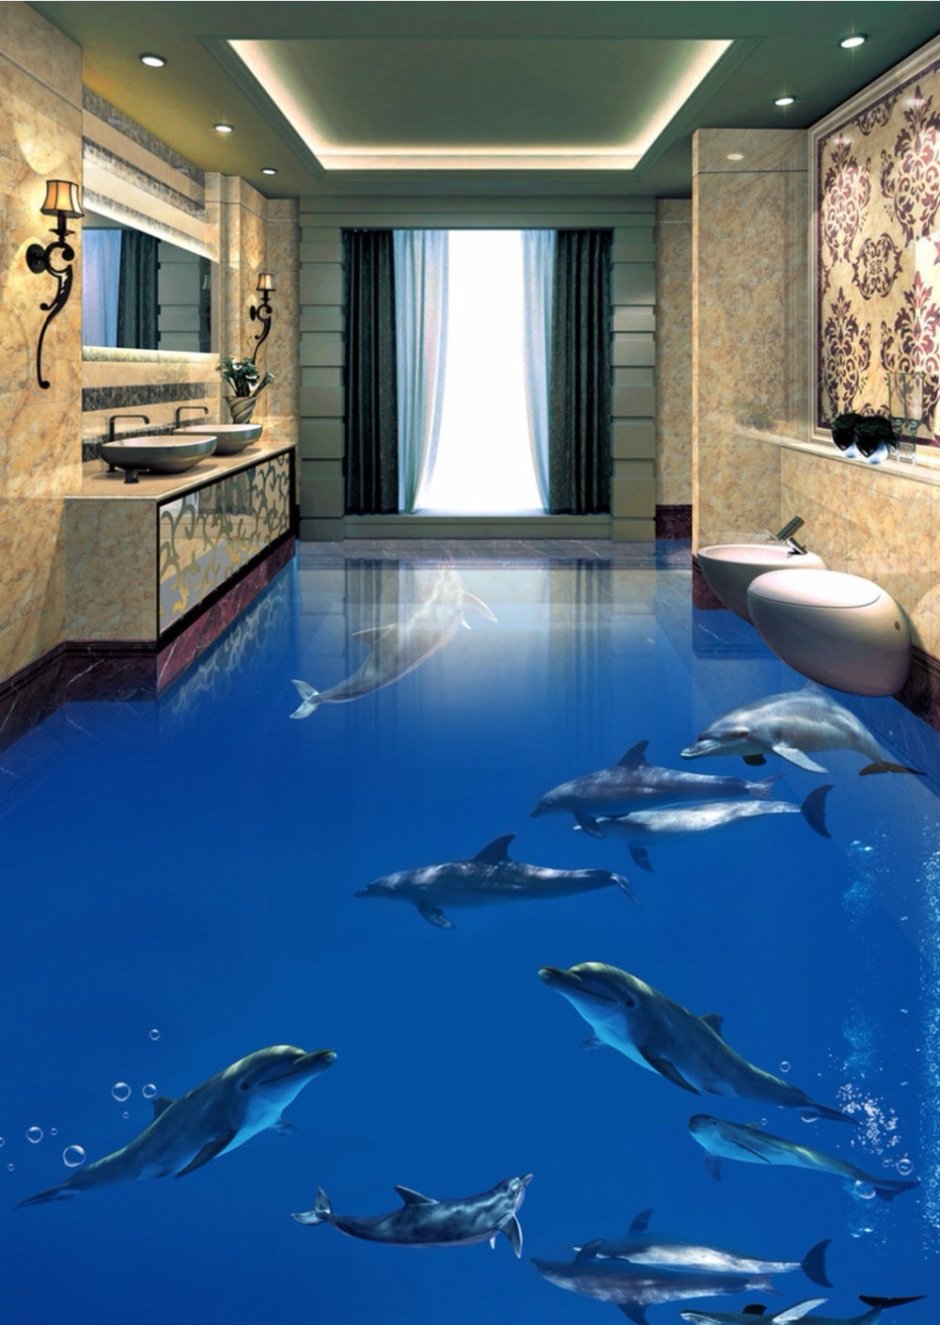 Панели в ванную с дельфинами